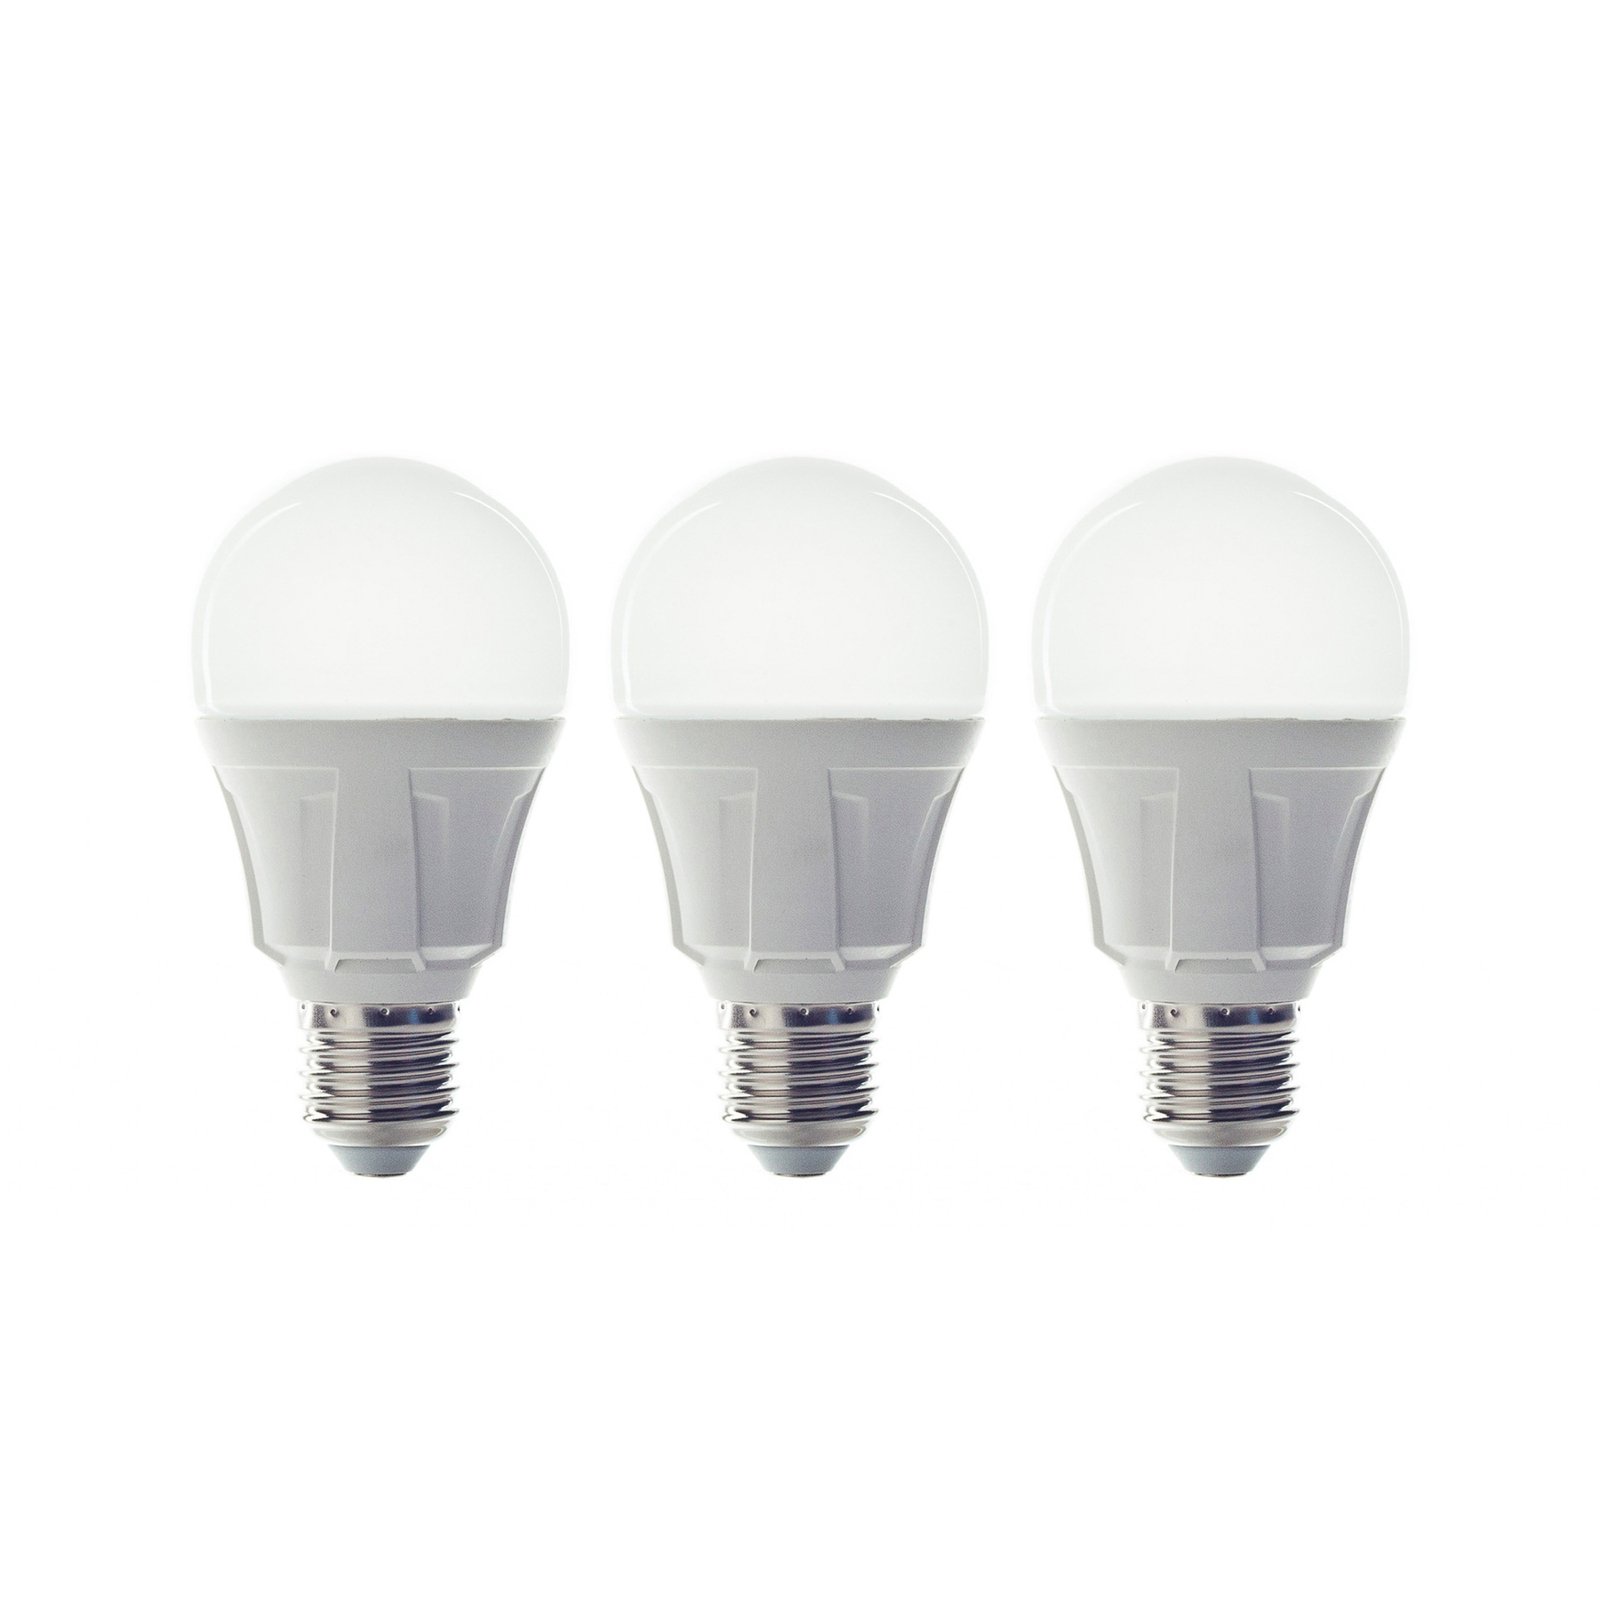 LED-Lampe Glühlampenform E27 11W 830 3er-Set